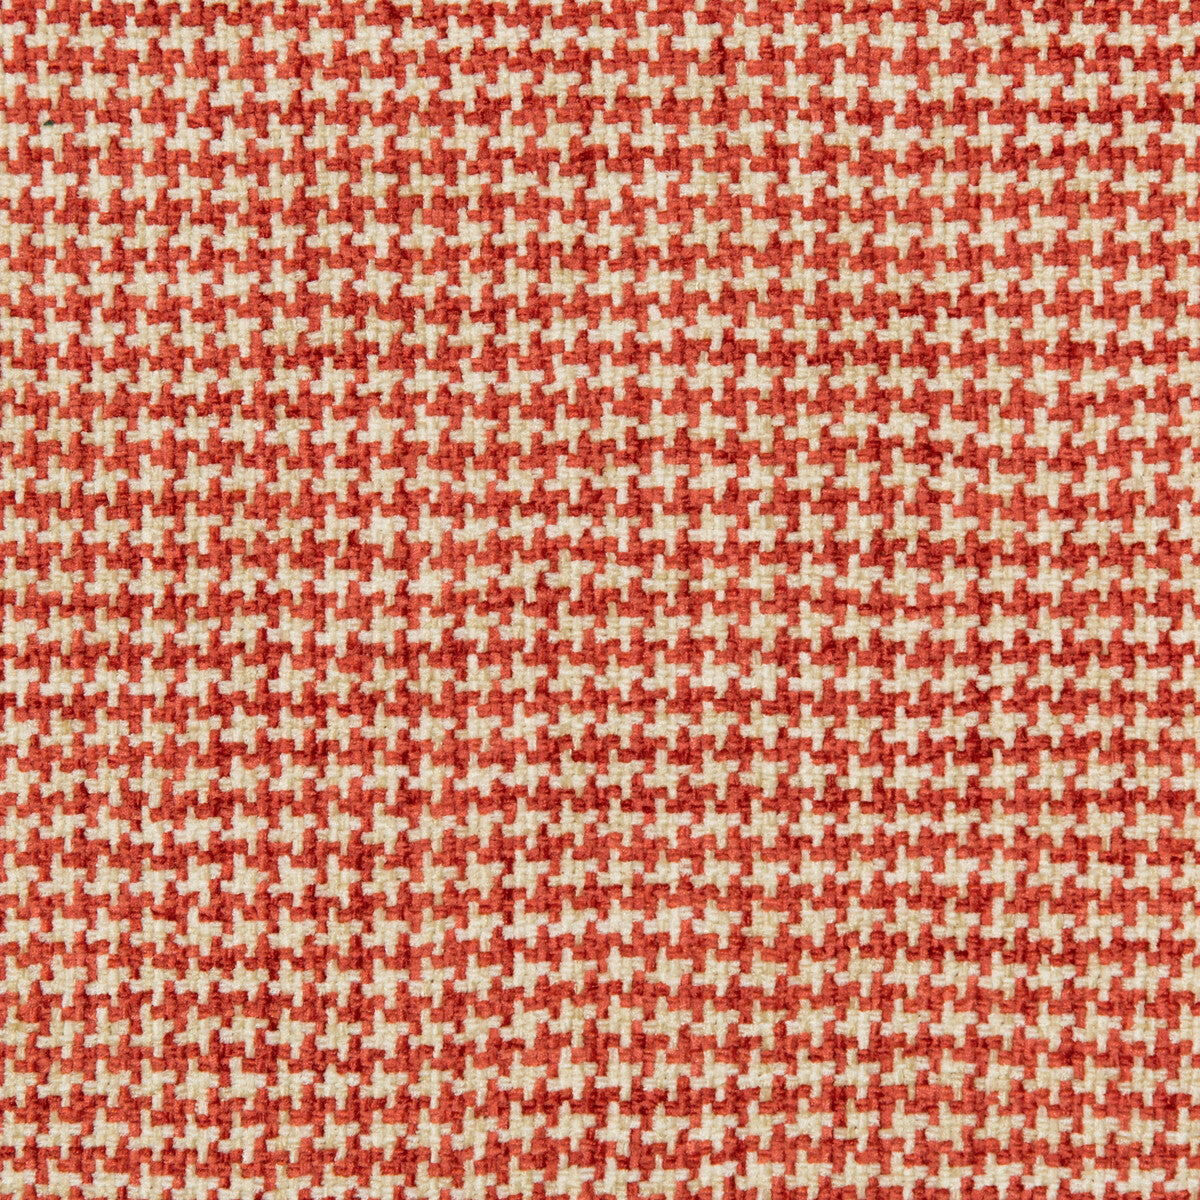 Kravet Basics fabric in 35778-19 color - pattern 35778.19.0 - by Kravet Basics